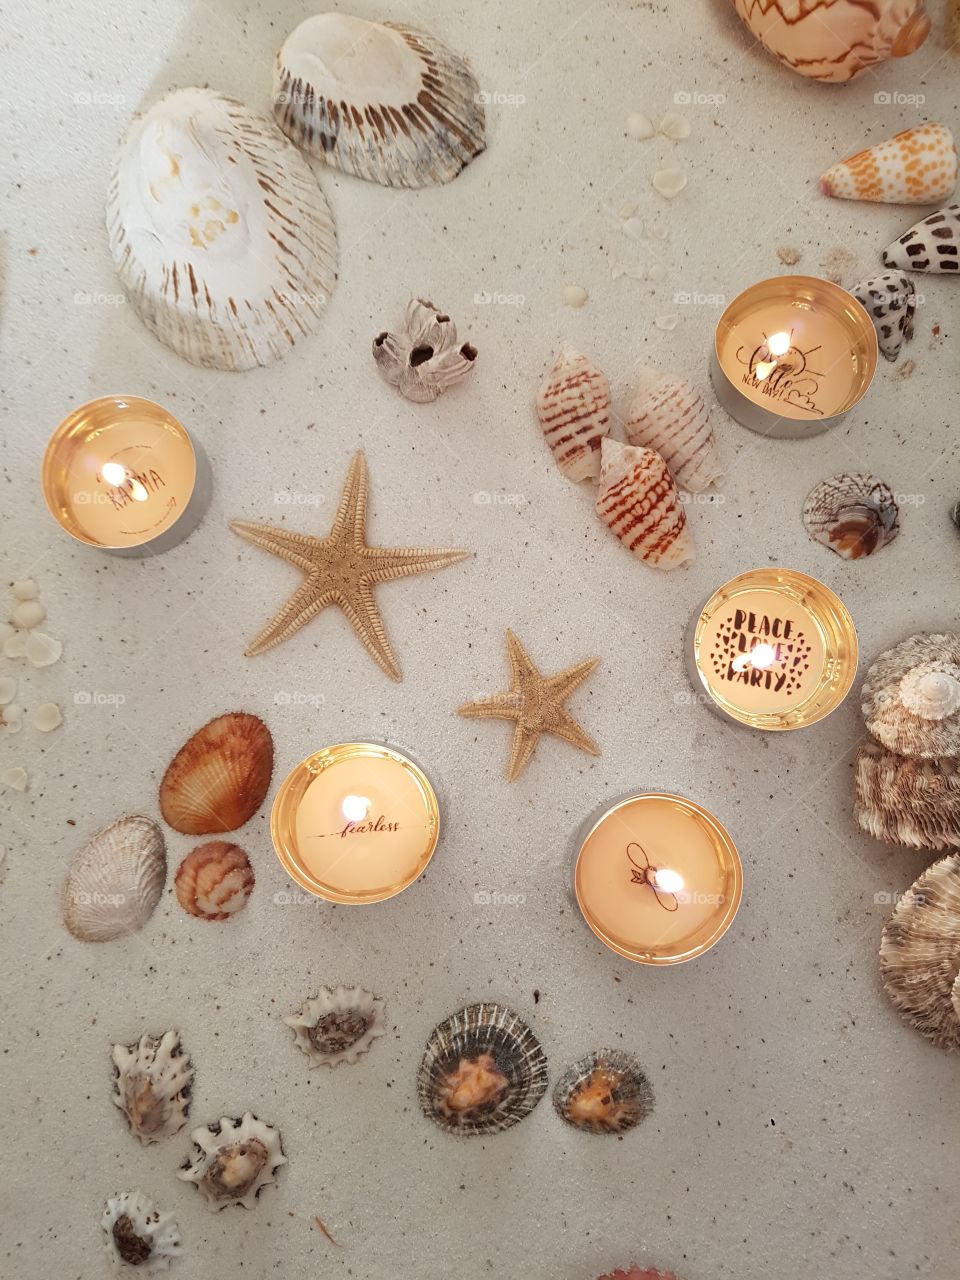 candlelight, seashells